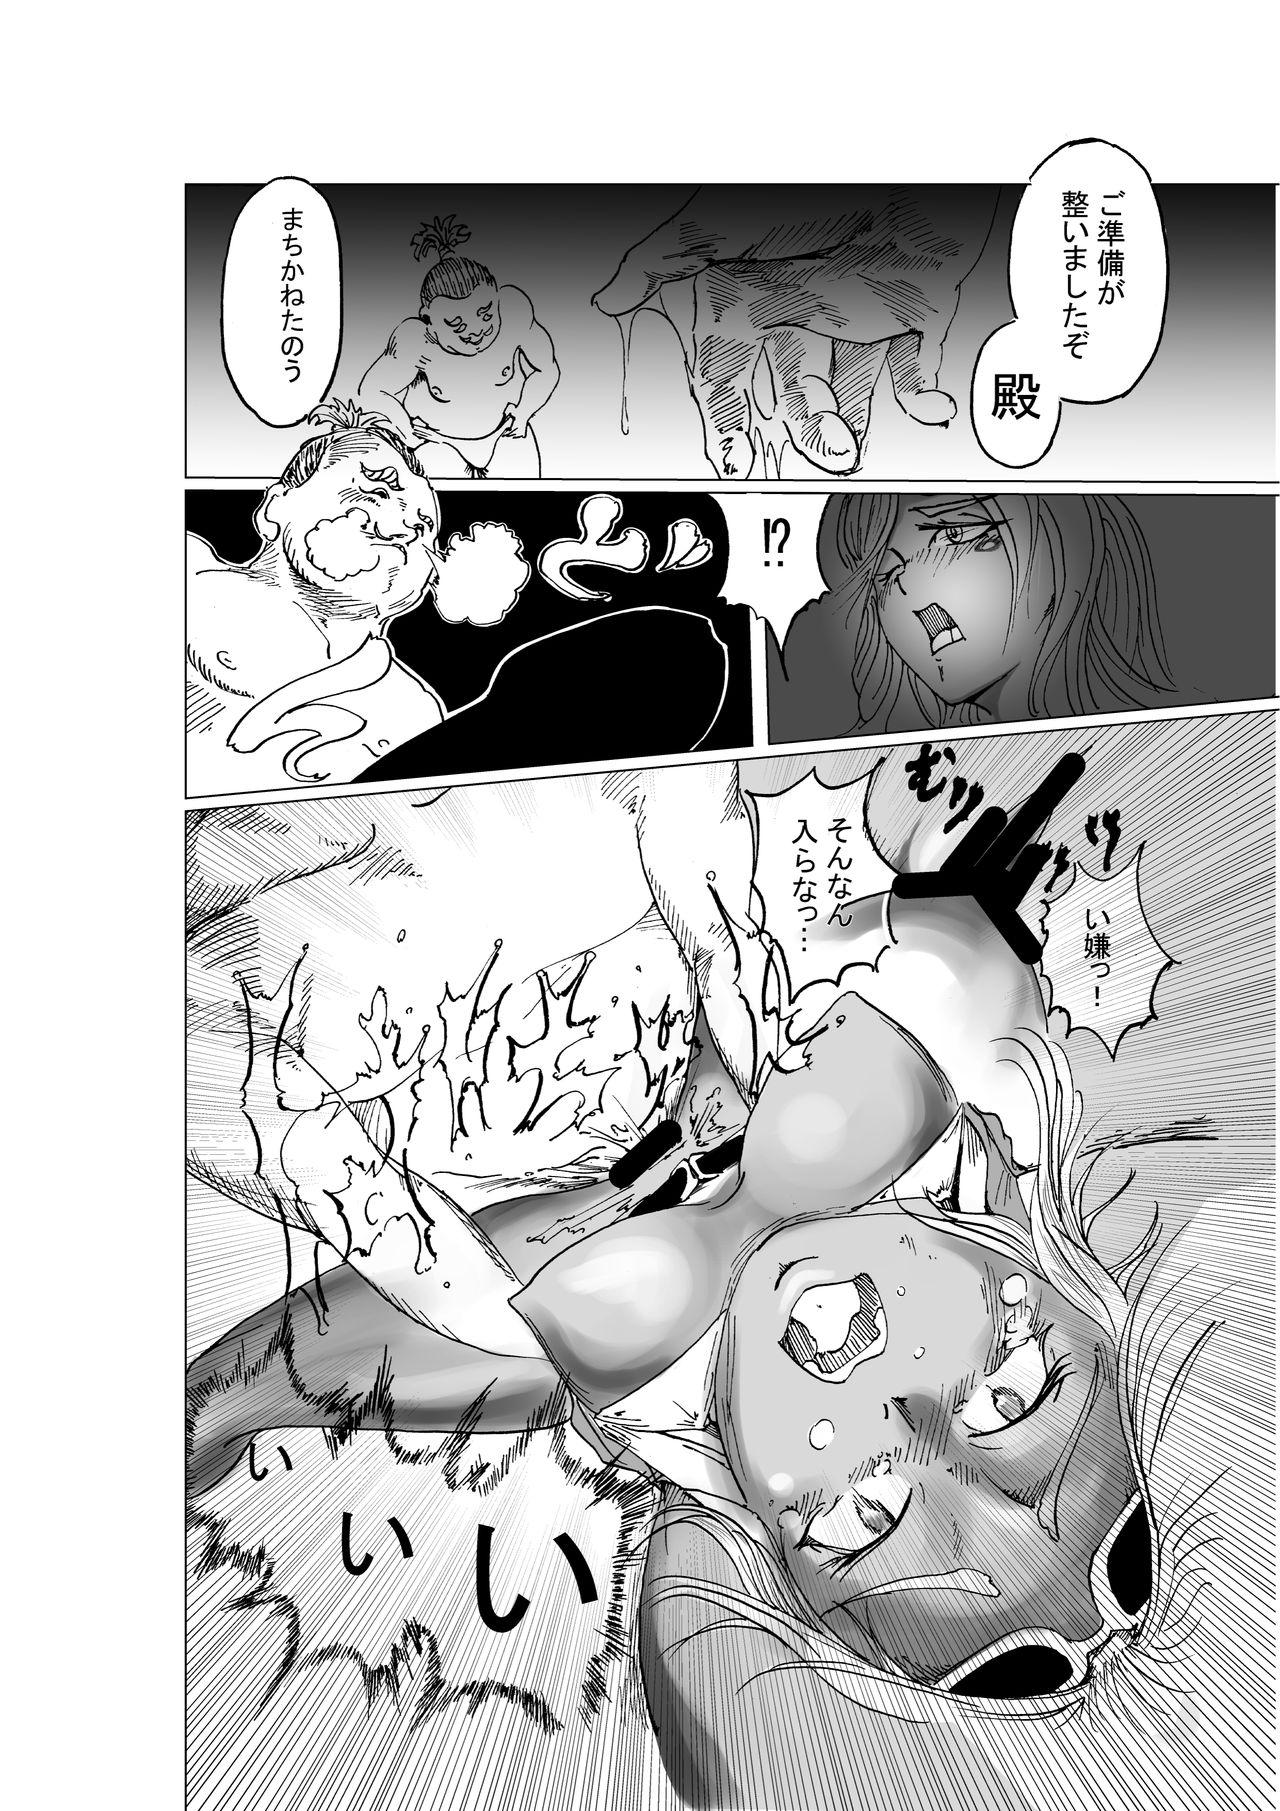 Punished 黒忍アゲハ - Original Cocksucking - Page 6